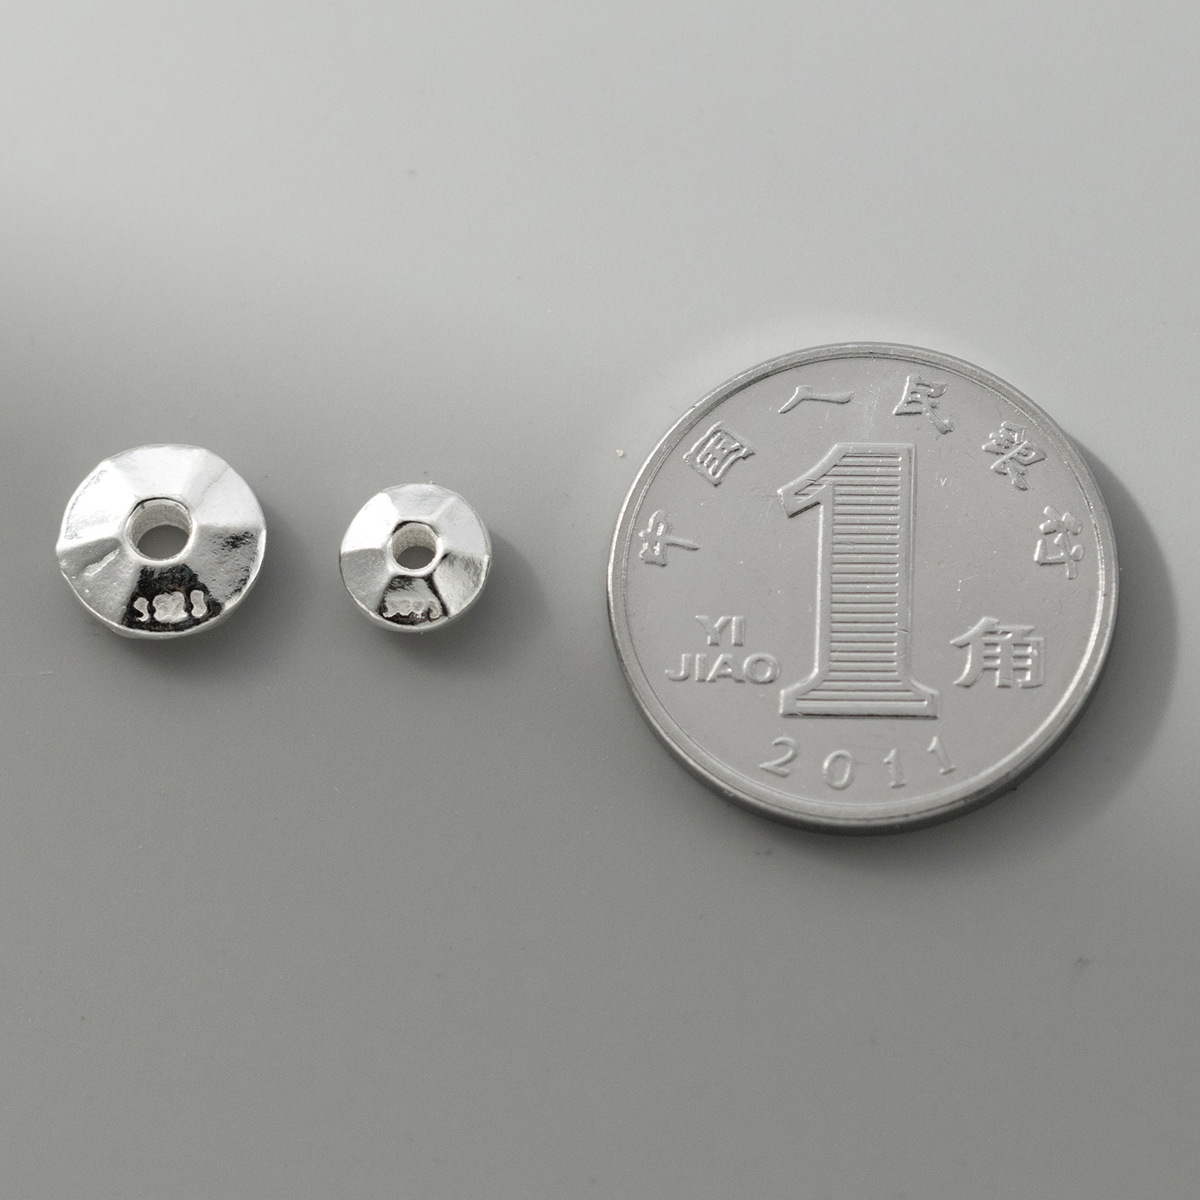 Plain silver 6 mm